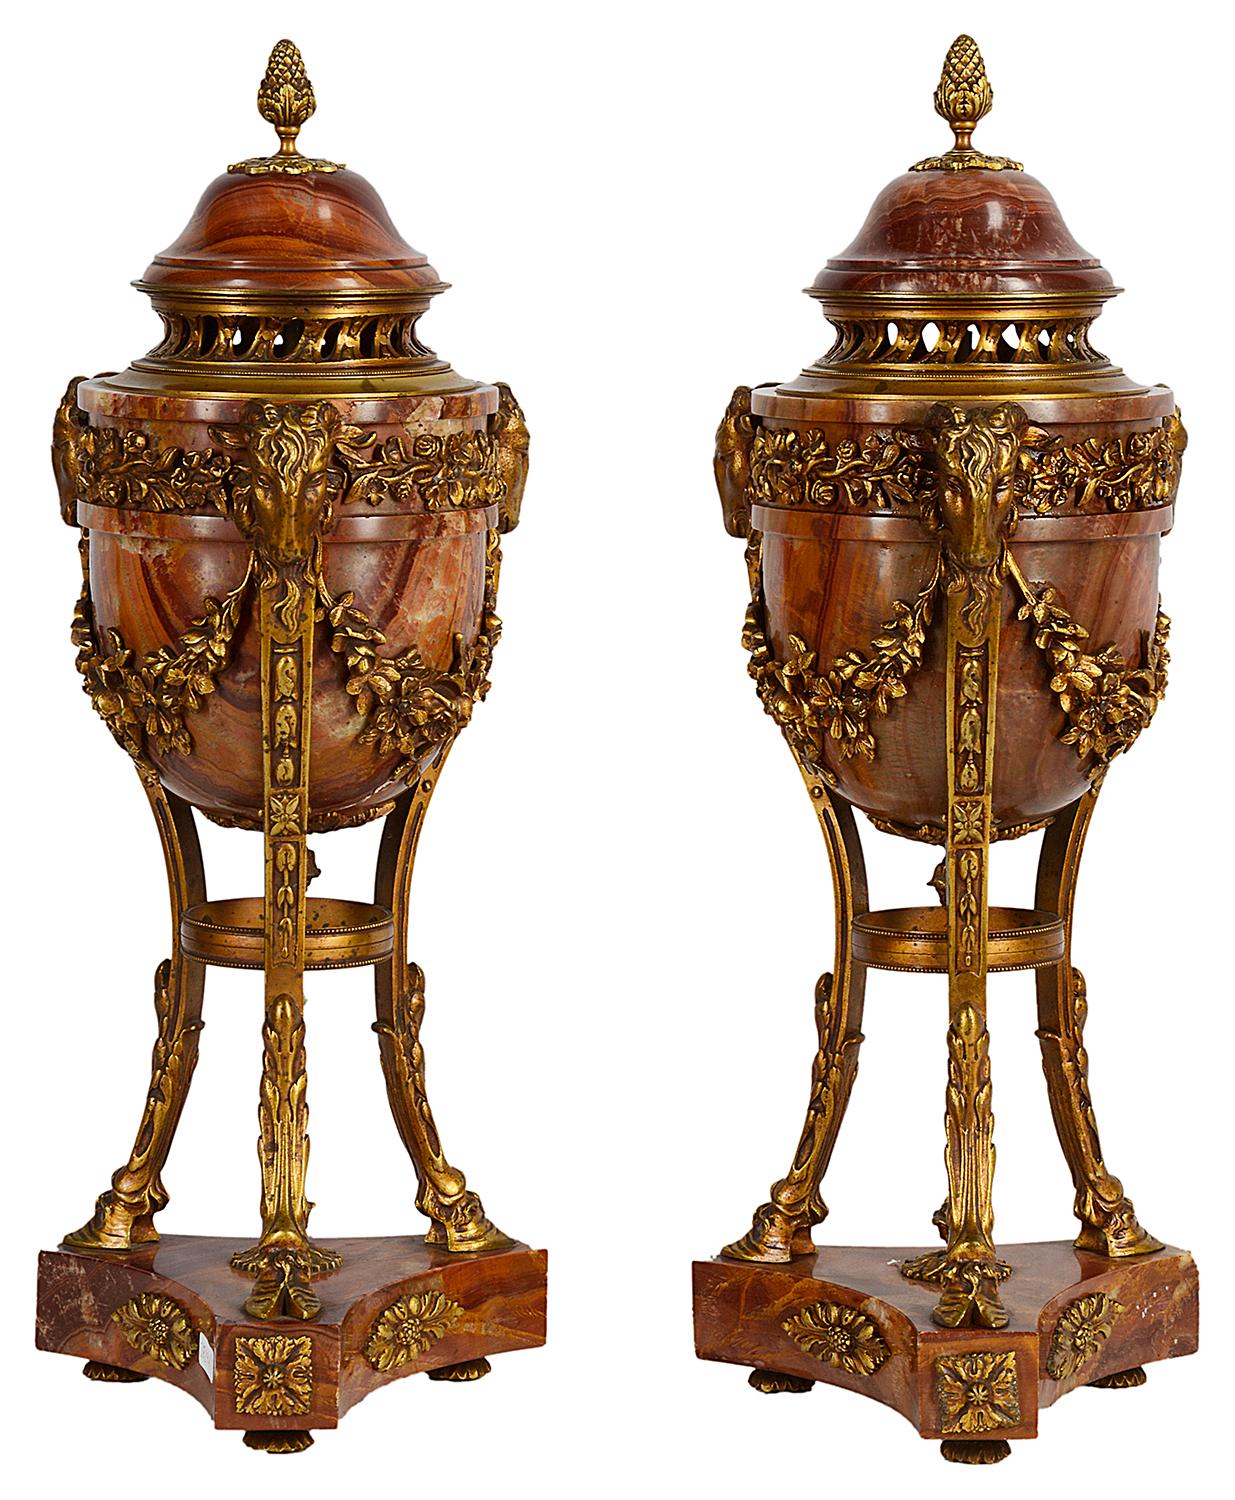 Ein hochwertiges Paar französischer Urnen aus Marmor und vergoldetem Ormolu aus dem späten 19. Jahrhundert, jeweils mit klassischen Rans-Kopf-Halterungen, die von drei nach außen gebogenen Stützen getragen werden, die in Huffüßen enden und auf einem